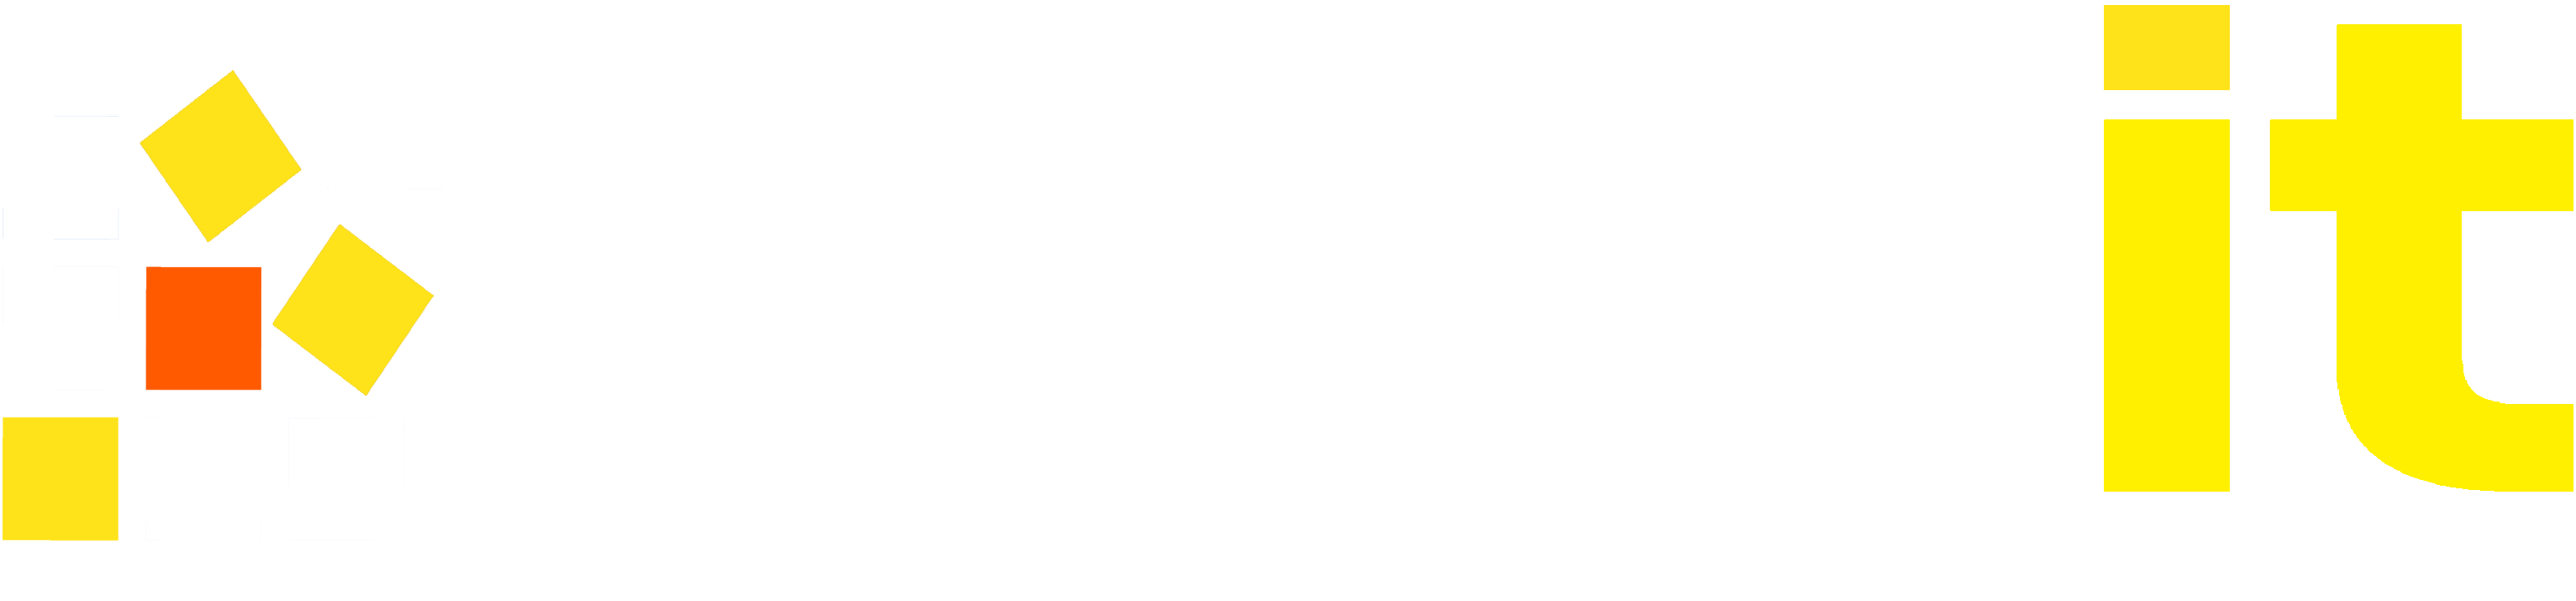 aqait.com logo2 - Copy